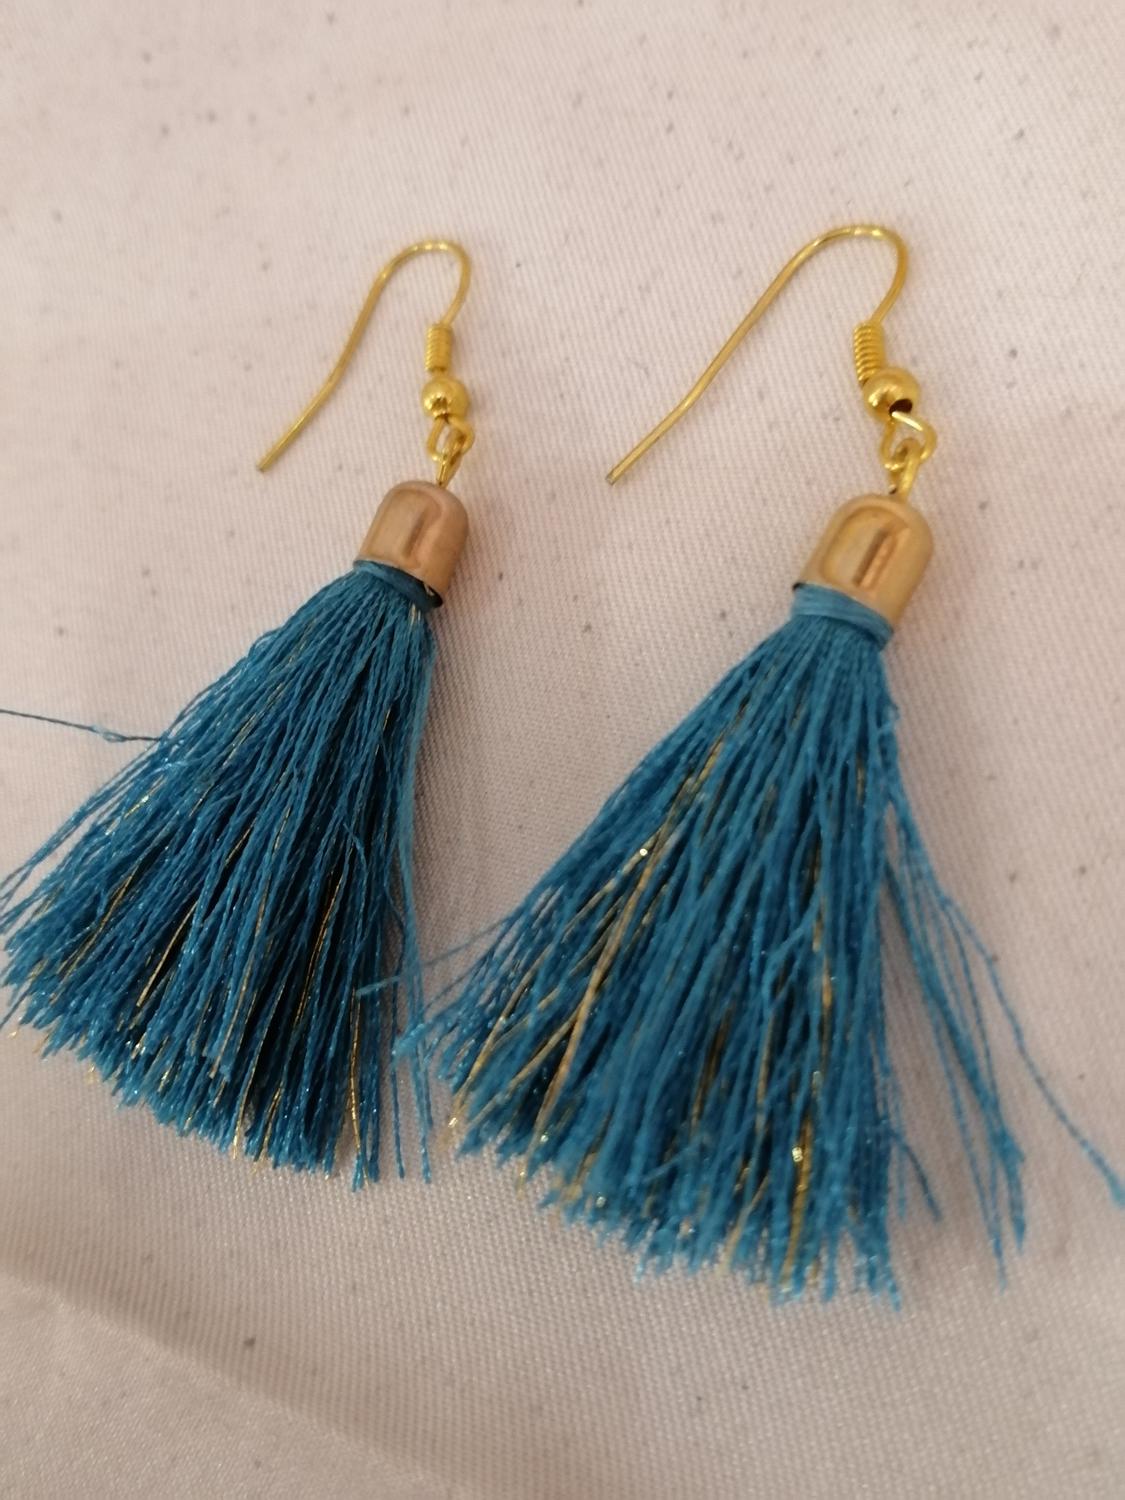 Bijouteri smycke örhänge turkosblå tofs med guldfärgad pinne